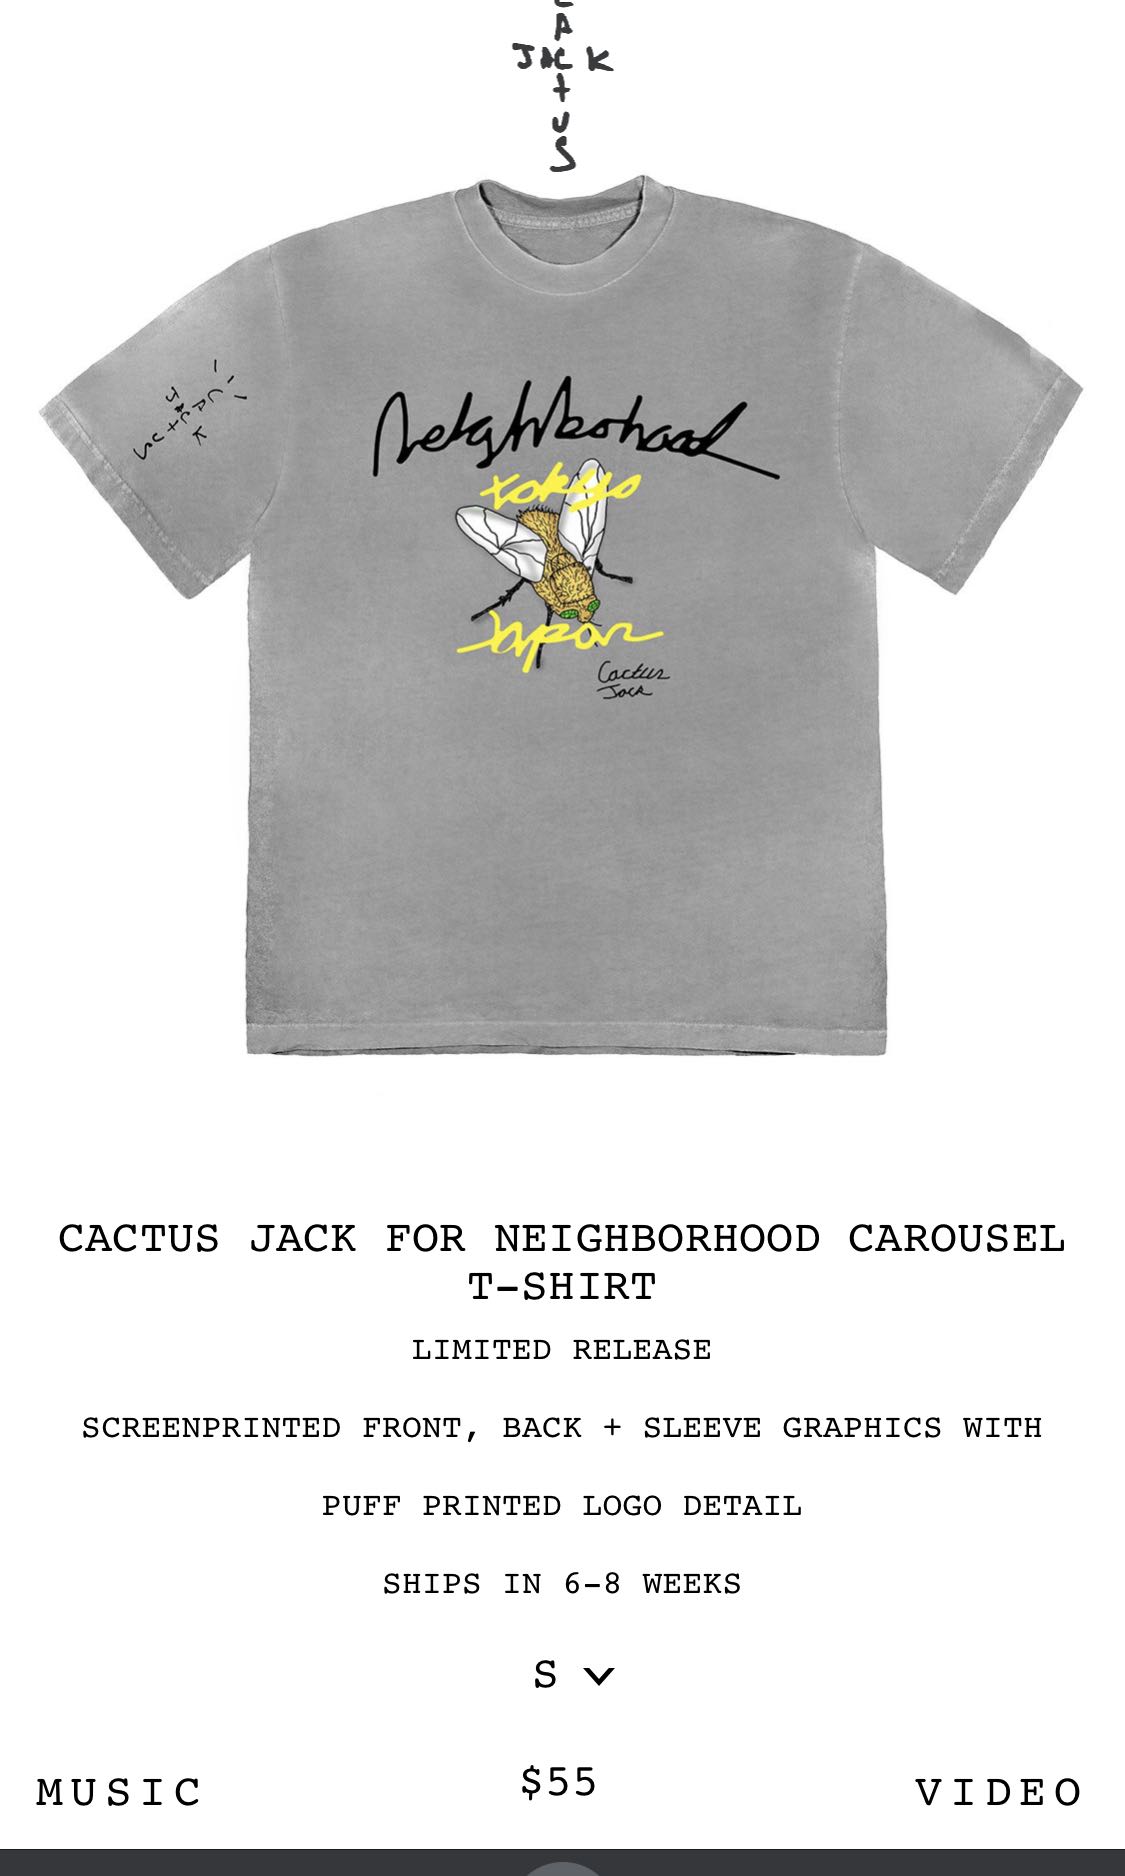 CACTUS JACK FOR NEIGHBORHOOD